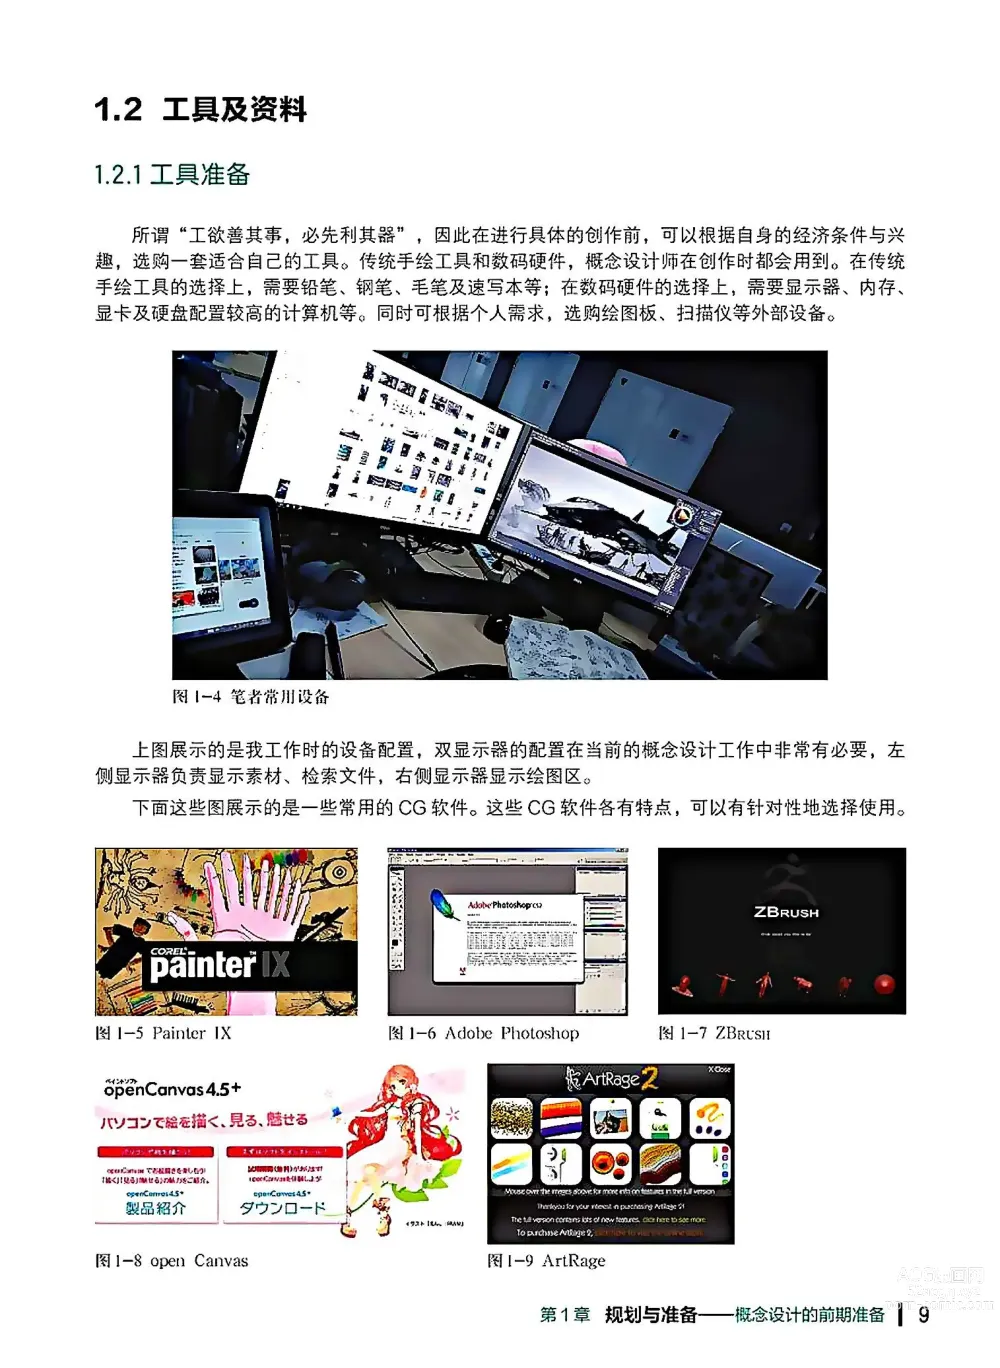 Page 10 of imageset 蝈蝈的概念艺术 商业游戏概念设计流程解析